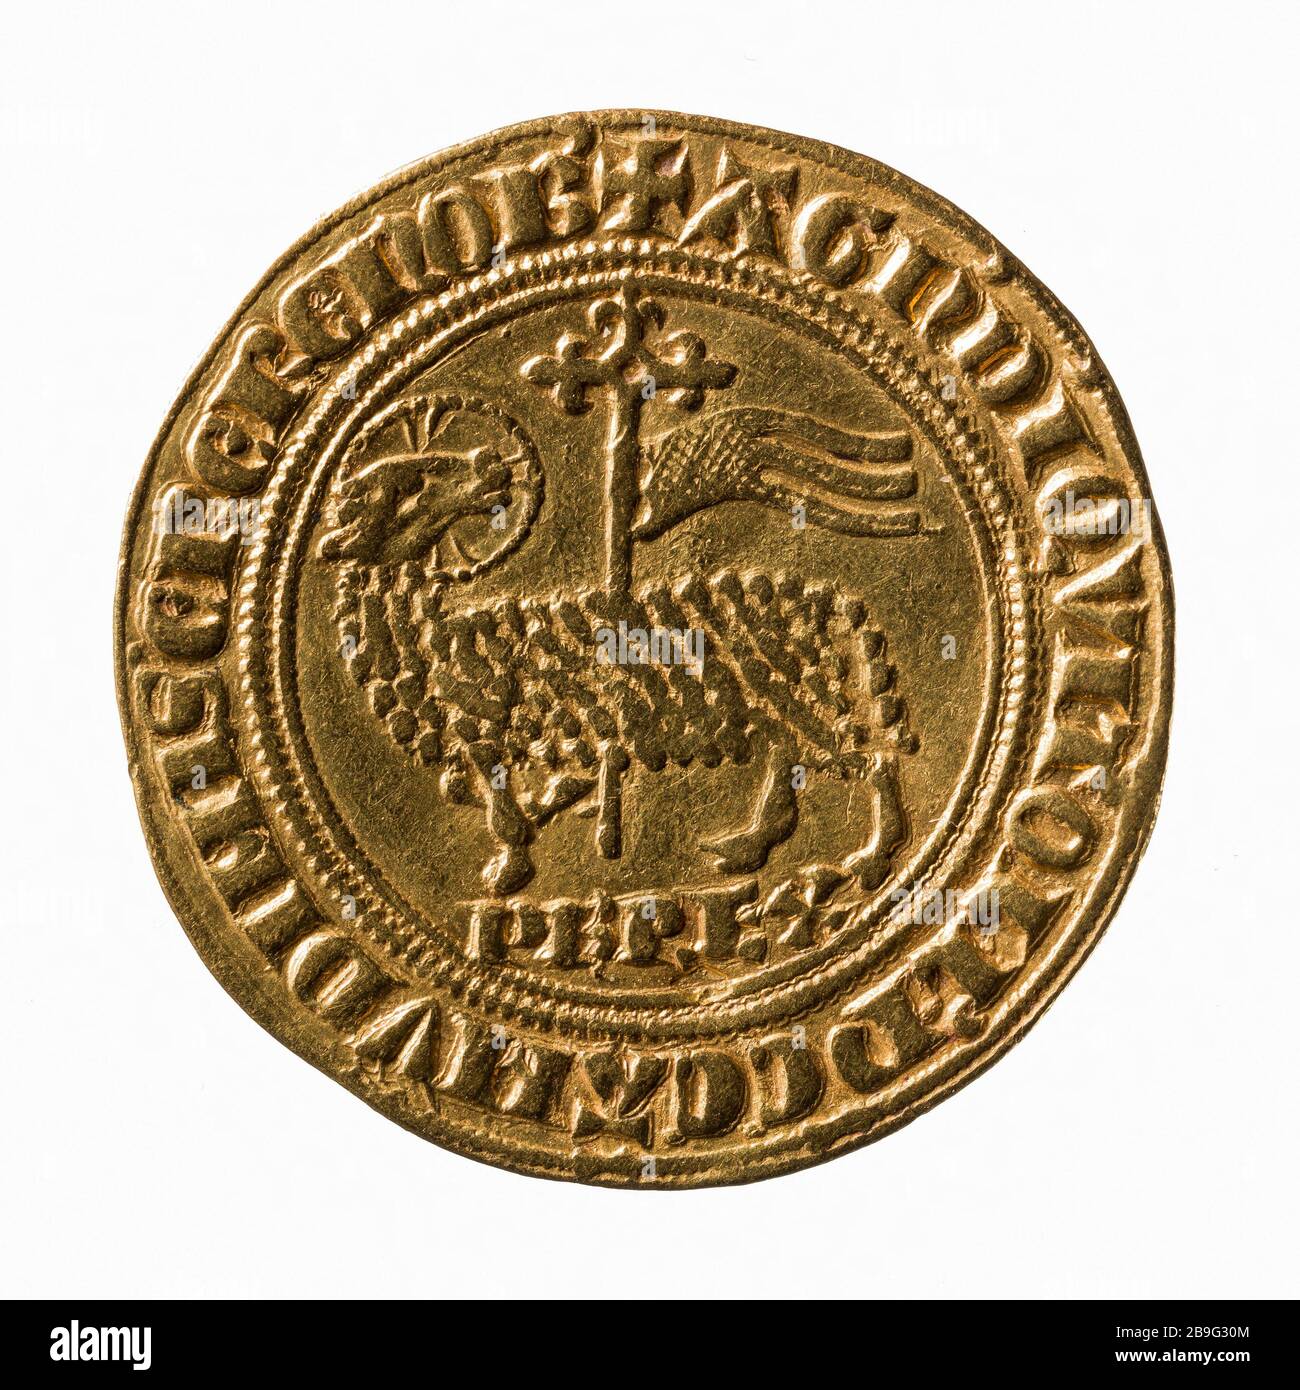 Agnello d'oro di Filippo IV, 1311 (titolo fittizio) Anonyme. Agnel d'Or de Philippe IV, 1311. Oppure. Parigi, musée Carnavalet. Foto Stock